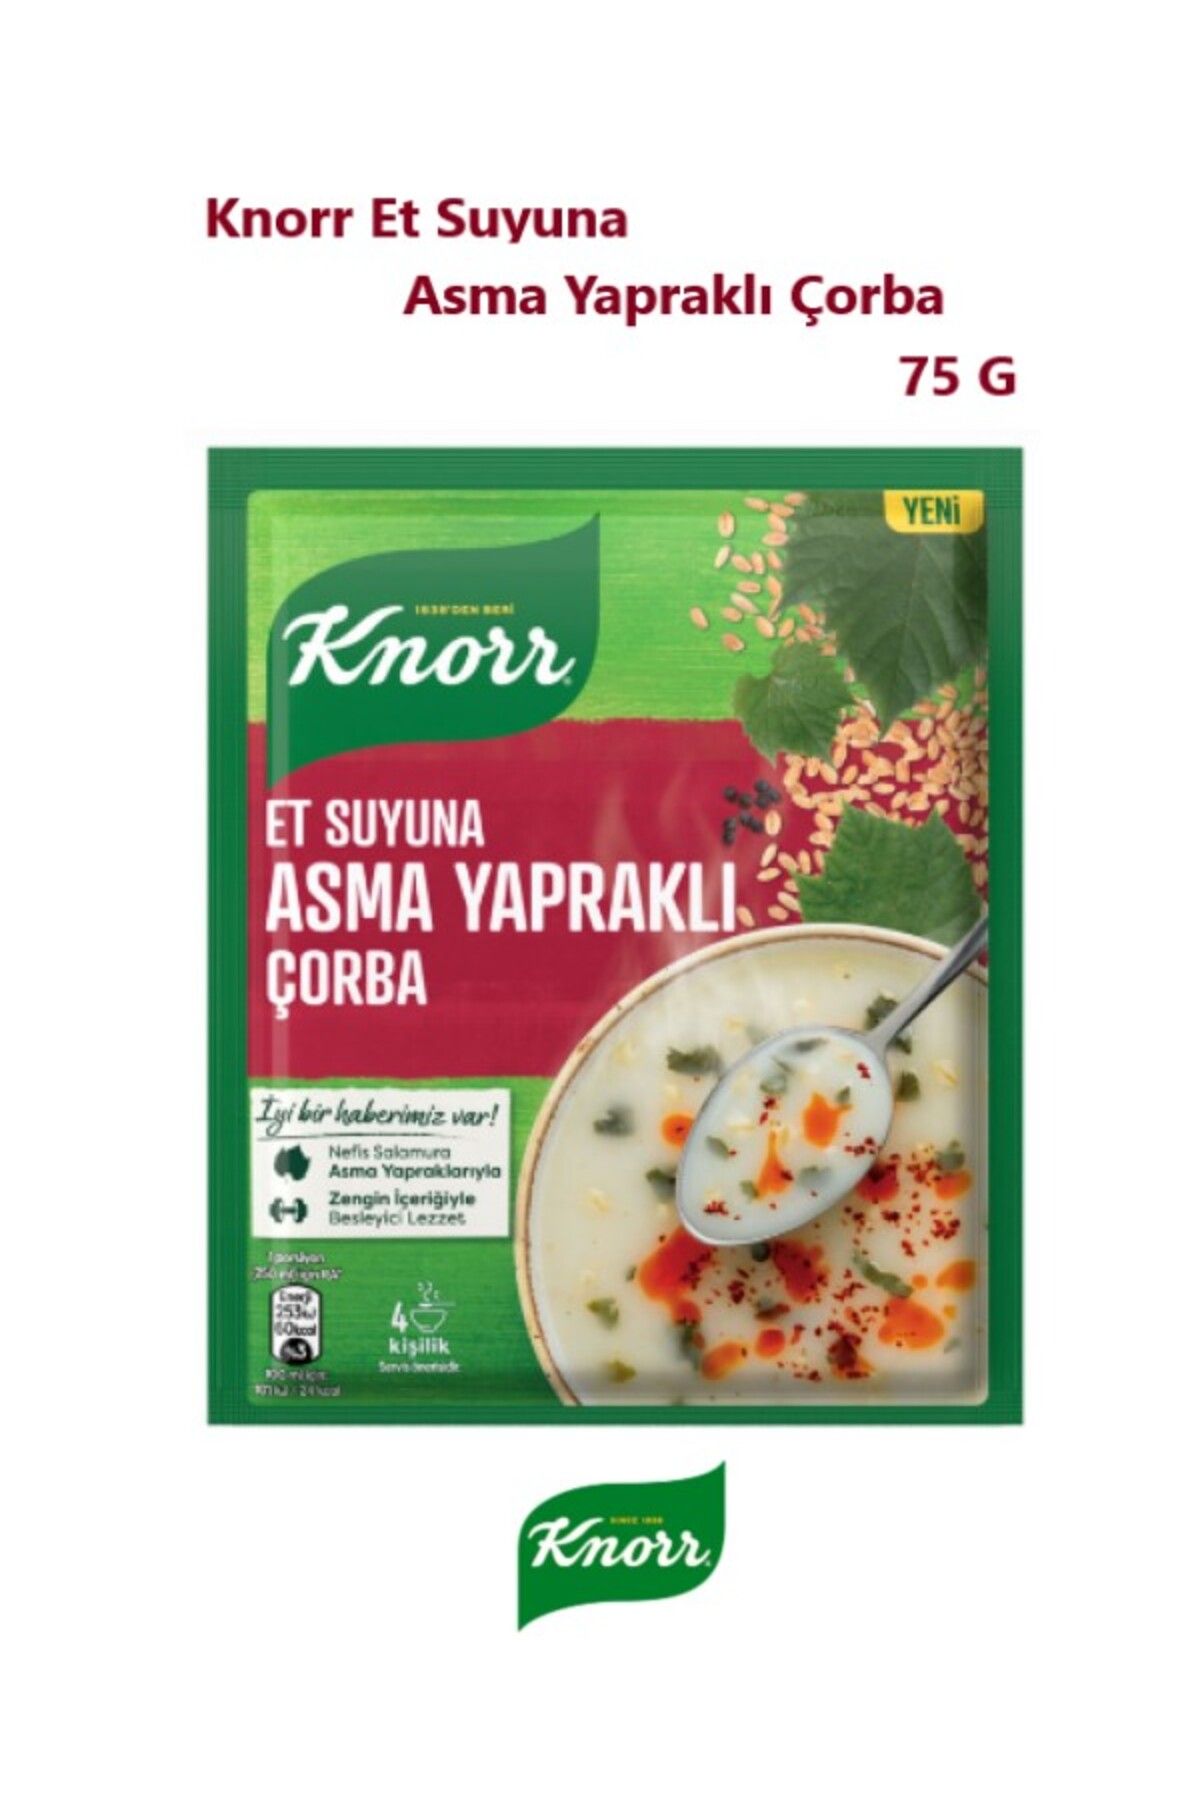 Knorr Et Suyuna Asma Yapraklı Çorba 75g